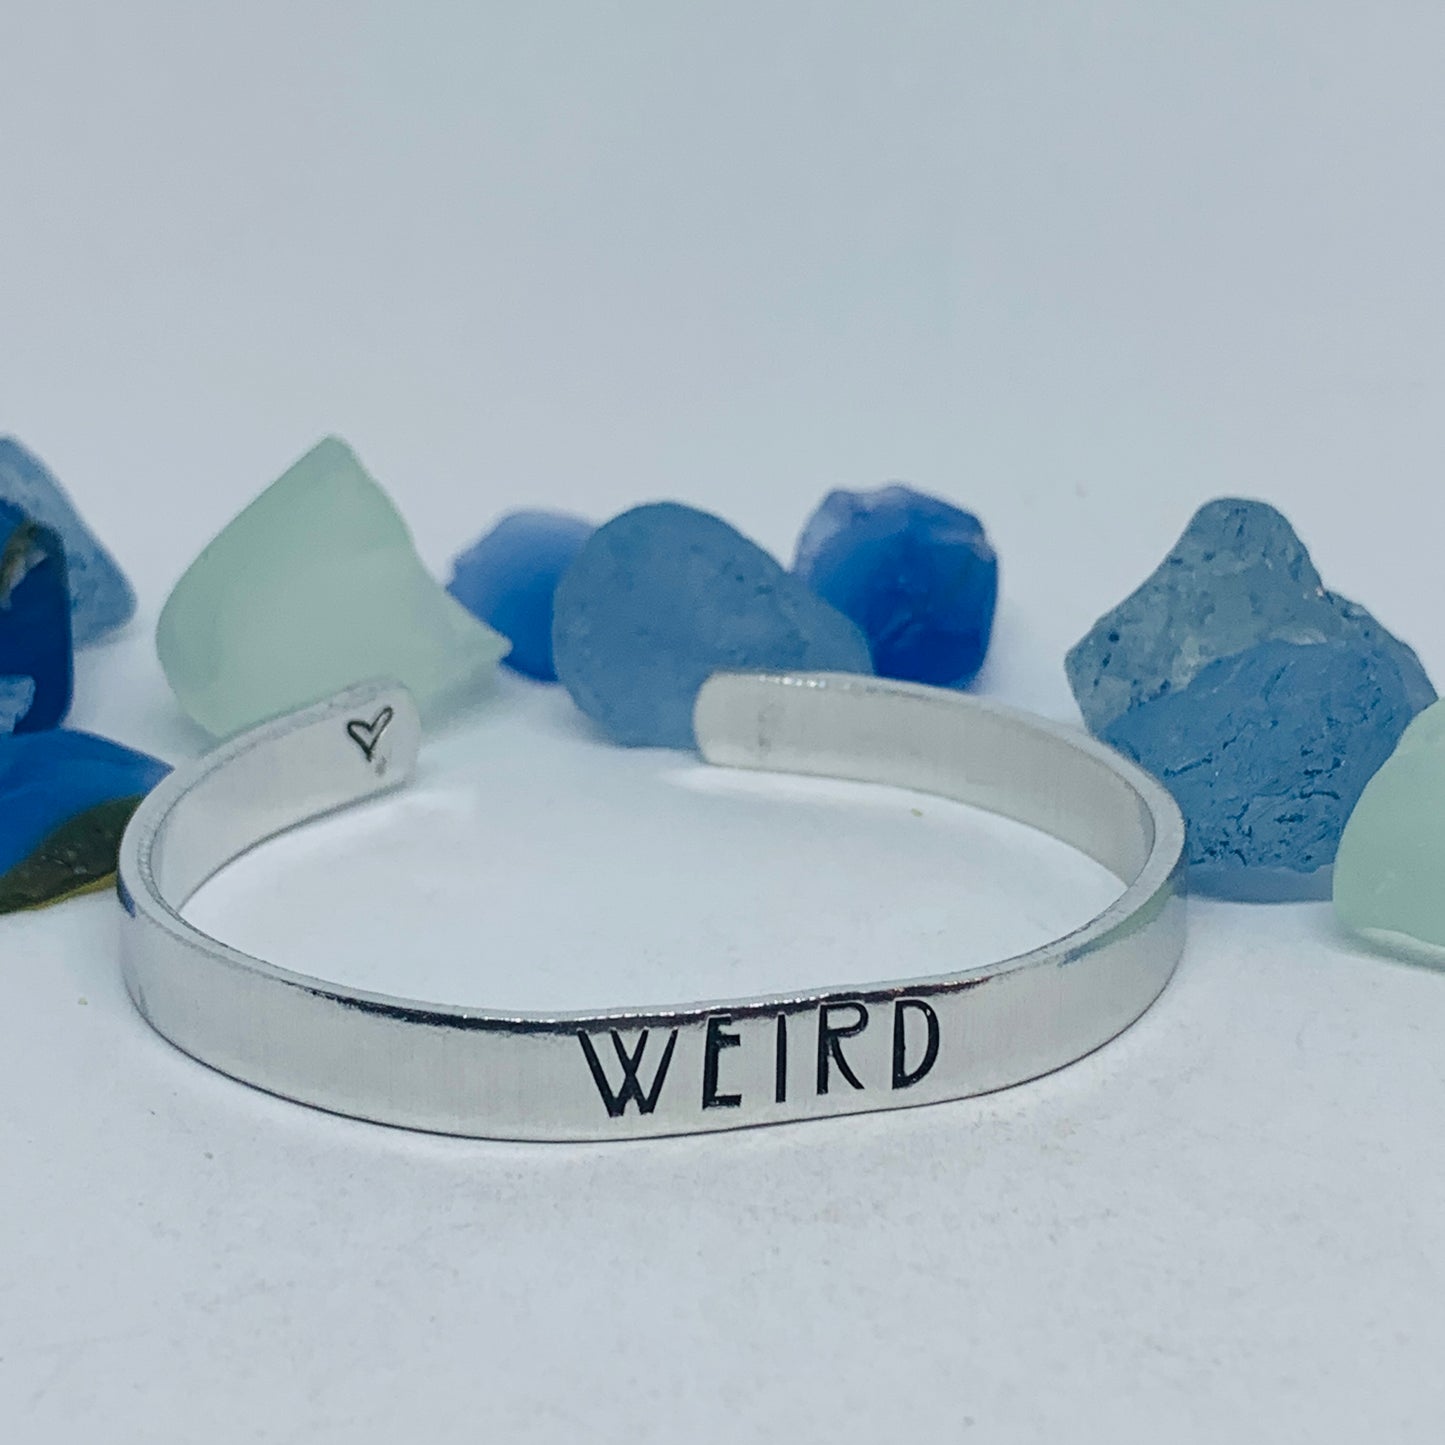 Weird Hand Stamped Metal Cuff Bracelet | Wonderful Weirdos Day | Stay Weird | Fun Unique